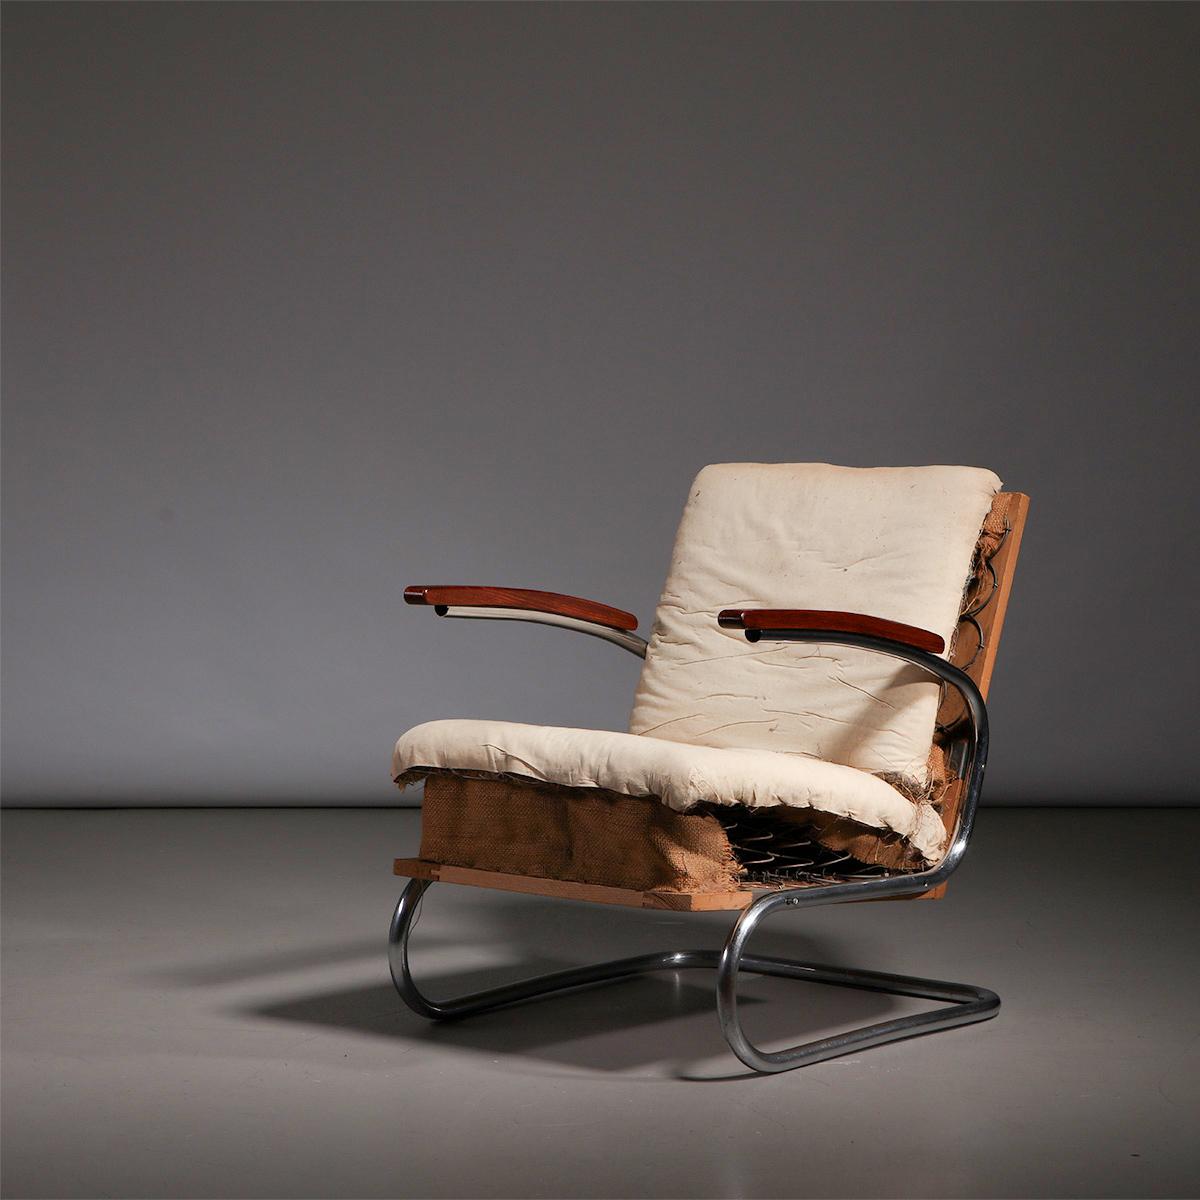 Fauteuil luge en tube d'acier chromé Bauhaus, modèle S411, fabriqué par Thonet en Allemagne, années 1930.

Ce fauteuil luge emblématique S411 présente un look épuré et moderne et s'intègre parfaitement dans une maison ou un bureau contemporain. Le